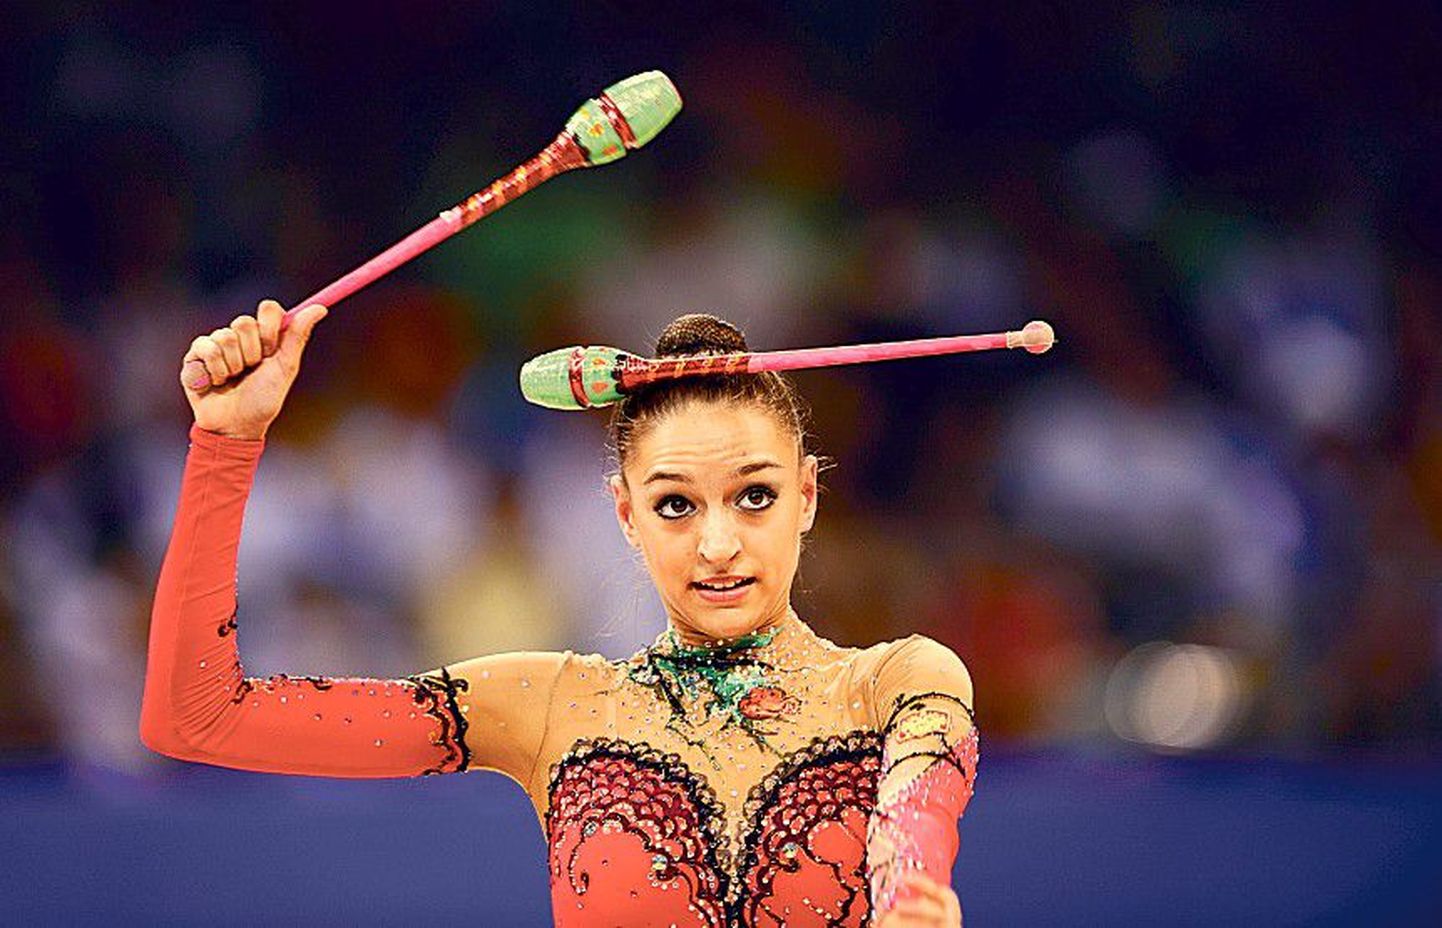 Олимпийская чемпионка по художественной гимнастике Евгения Канаева должна вновь и вновь доказывать свое превосходство.